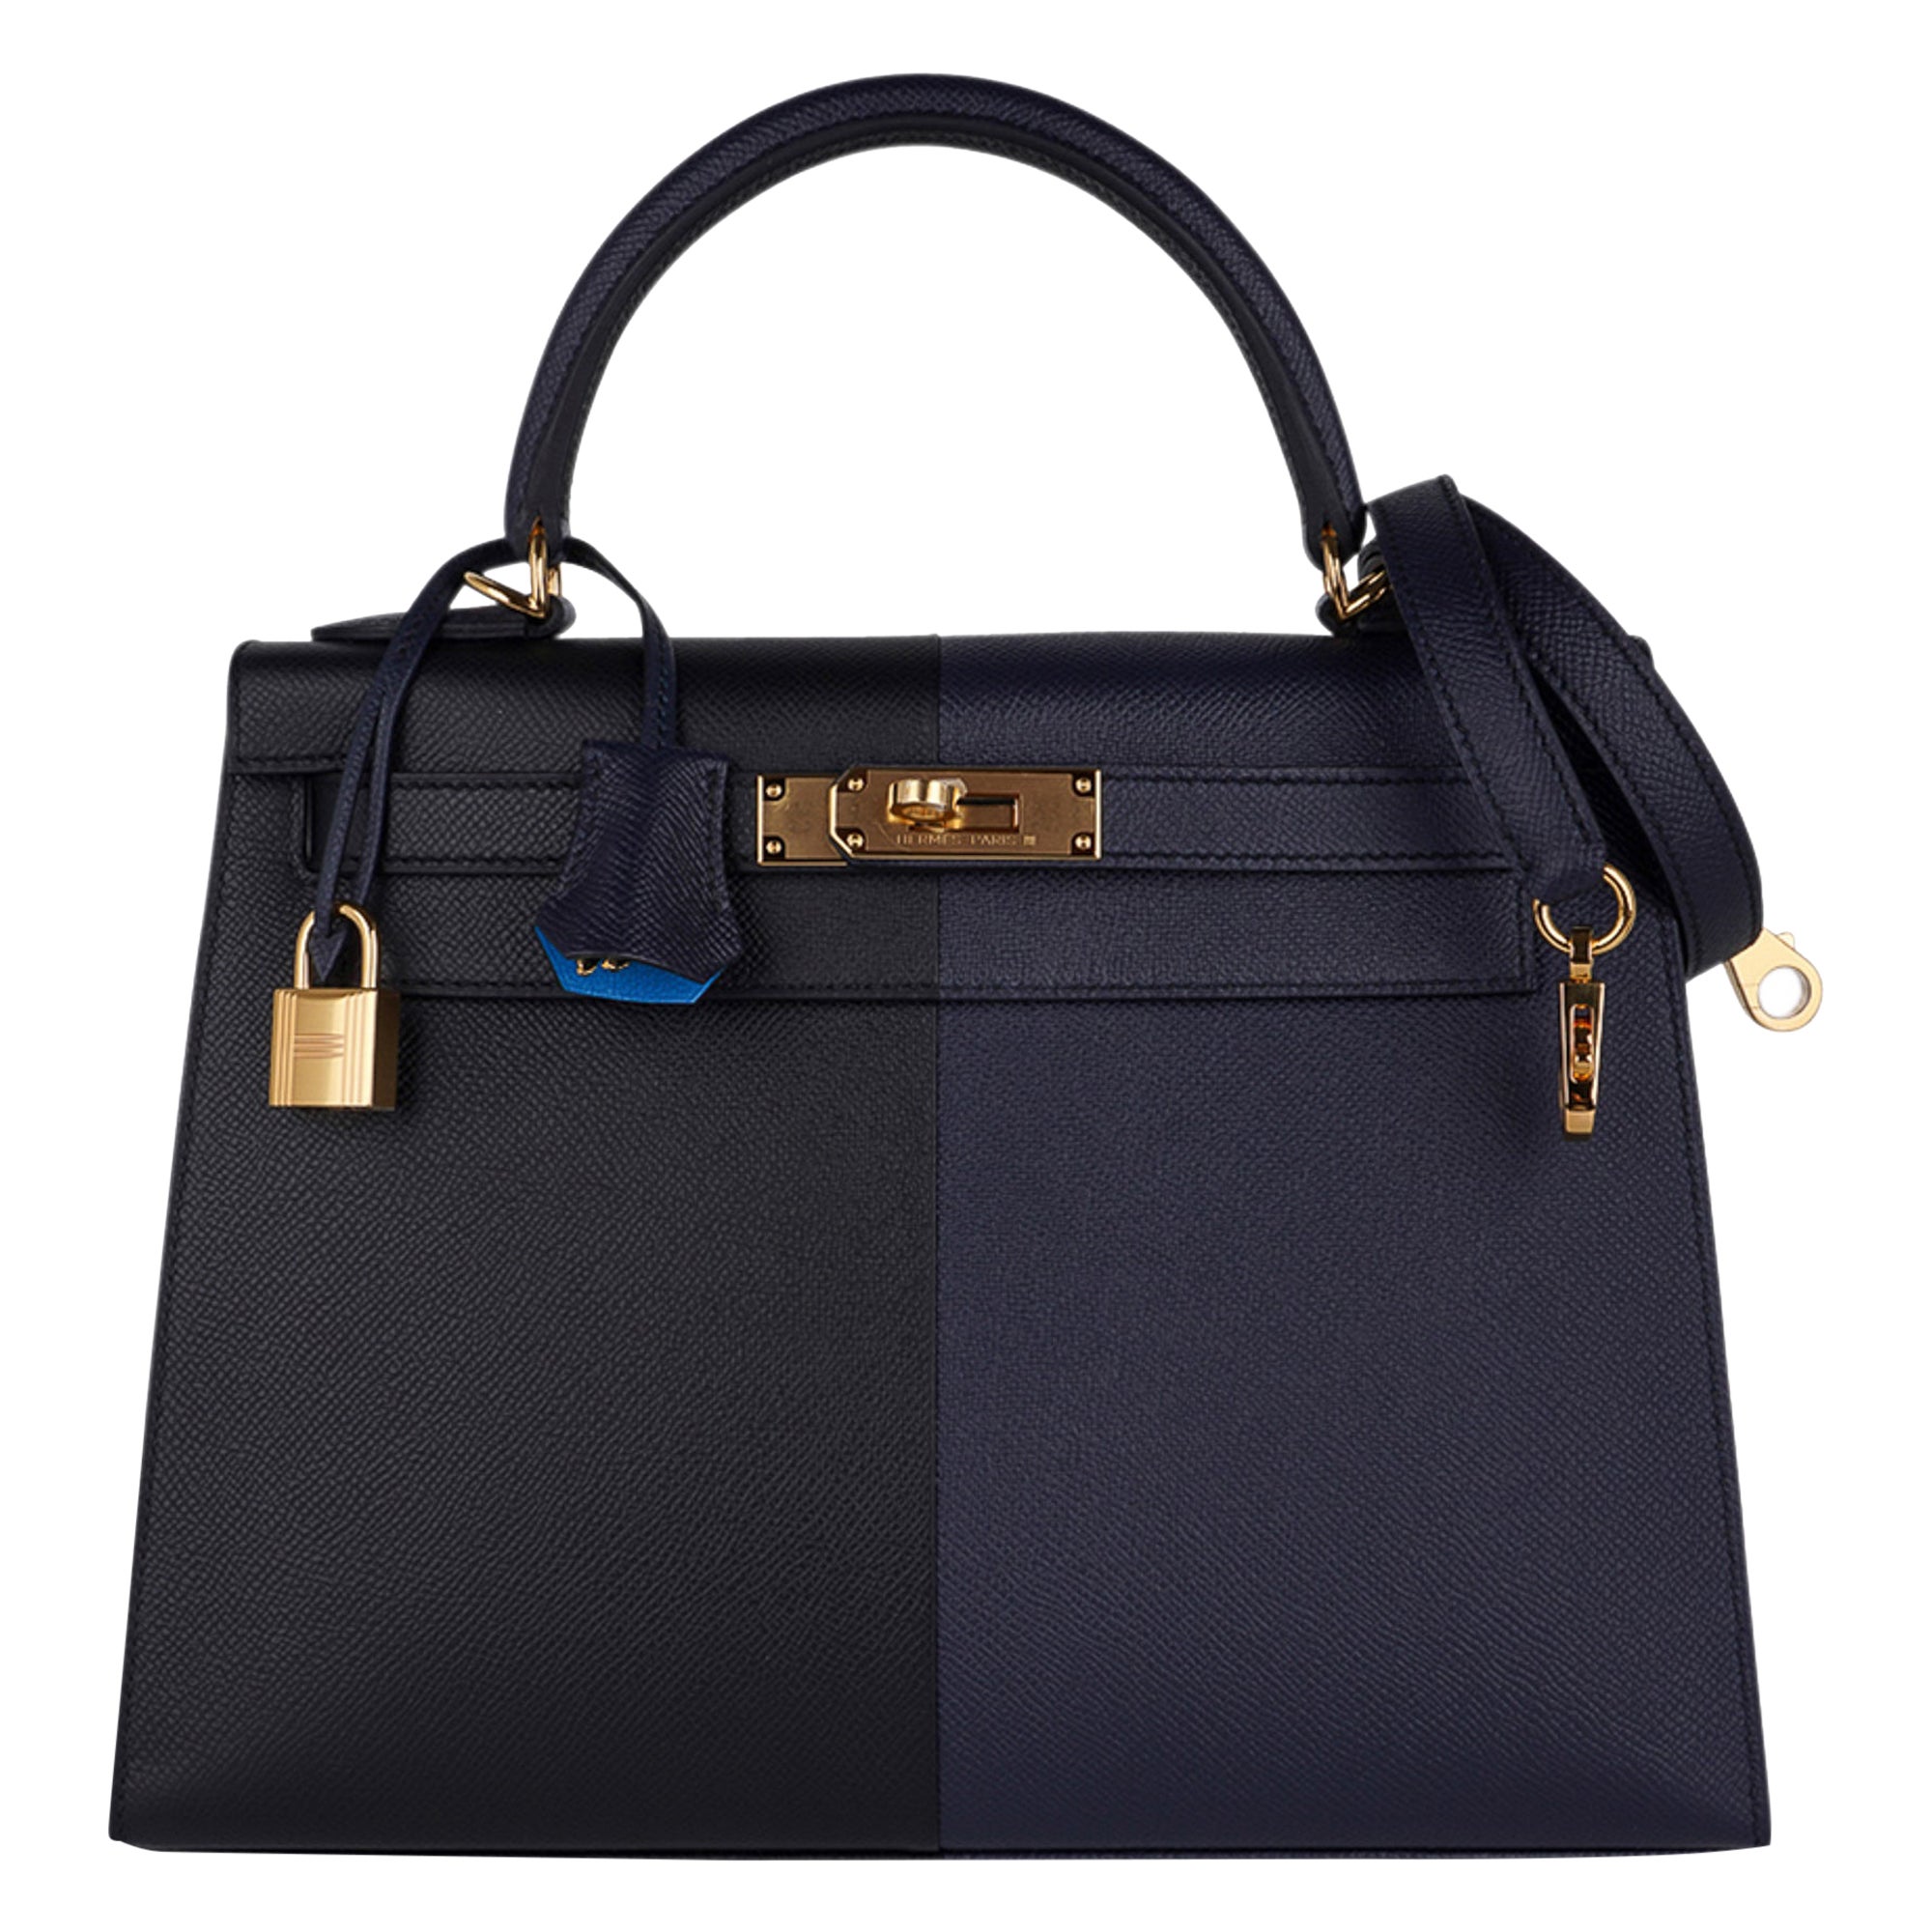 Hermes Kelly Casaque 28 Bag Black / Bleu Indigo Sellier Limited Edition